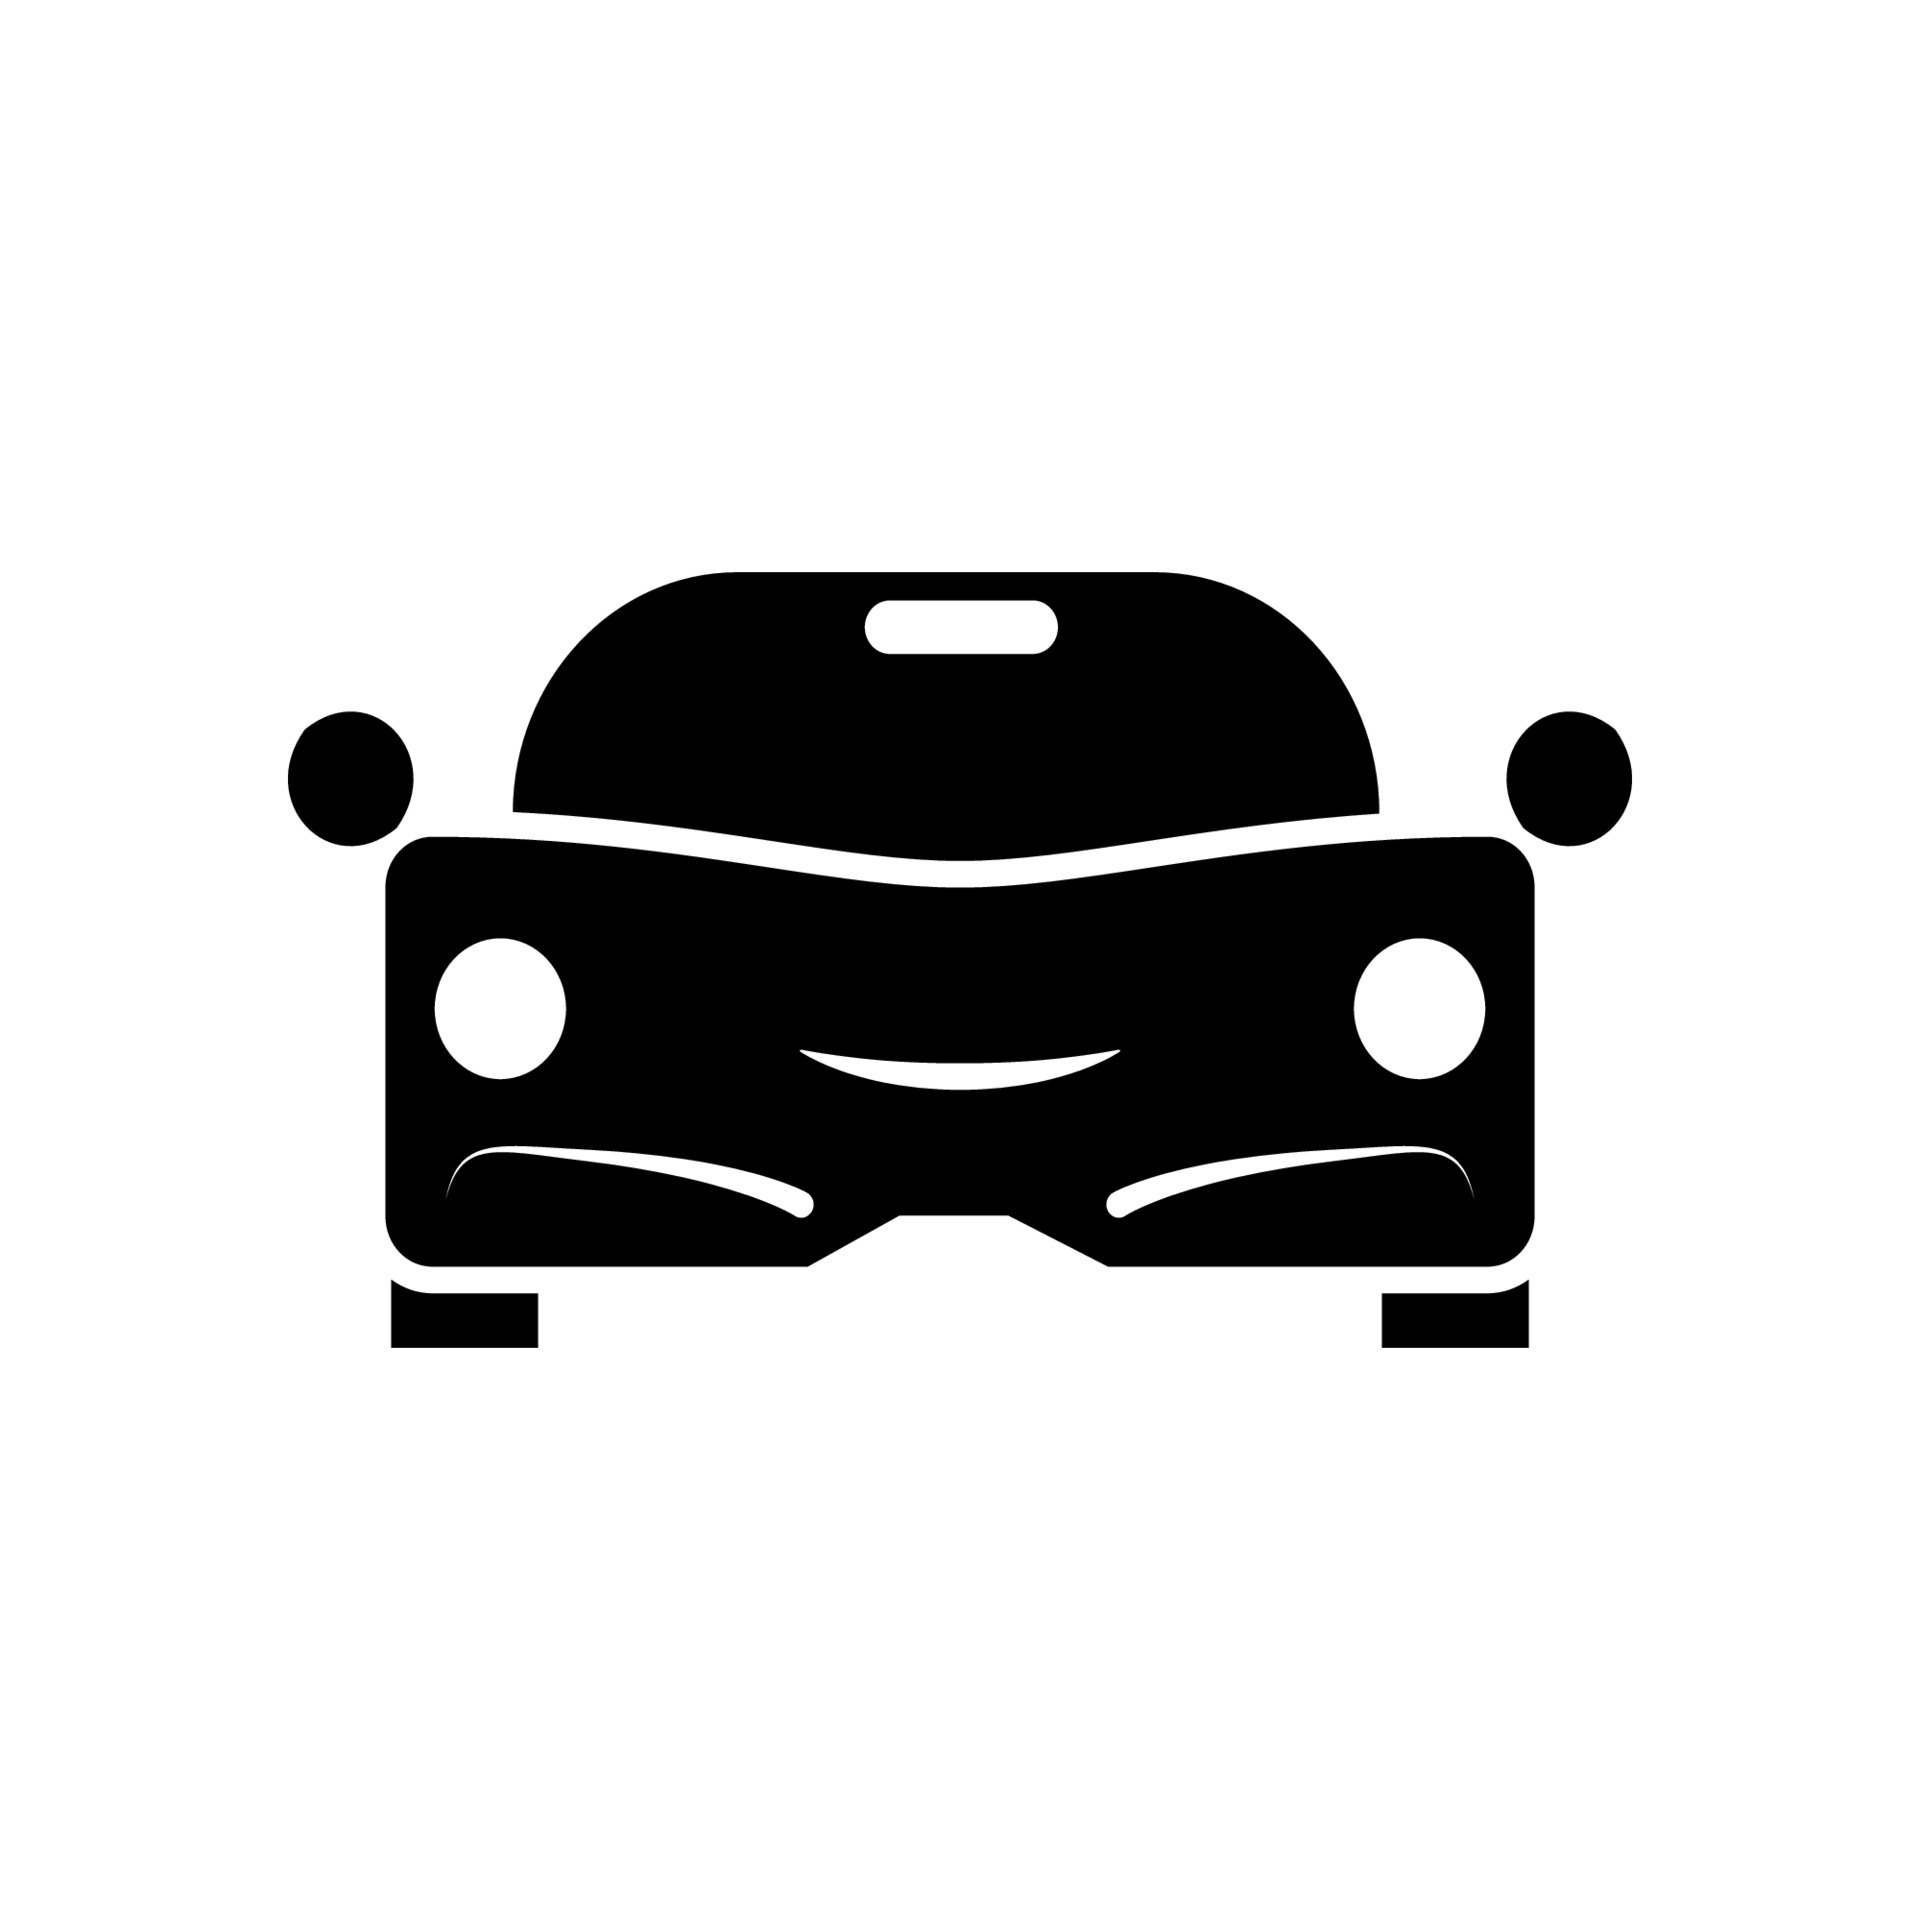 Car icon template 7336118 Vector Art at Vecteezy